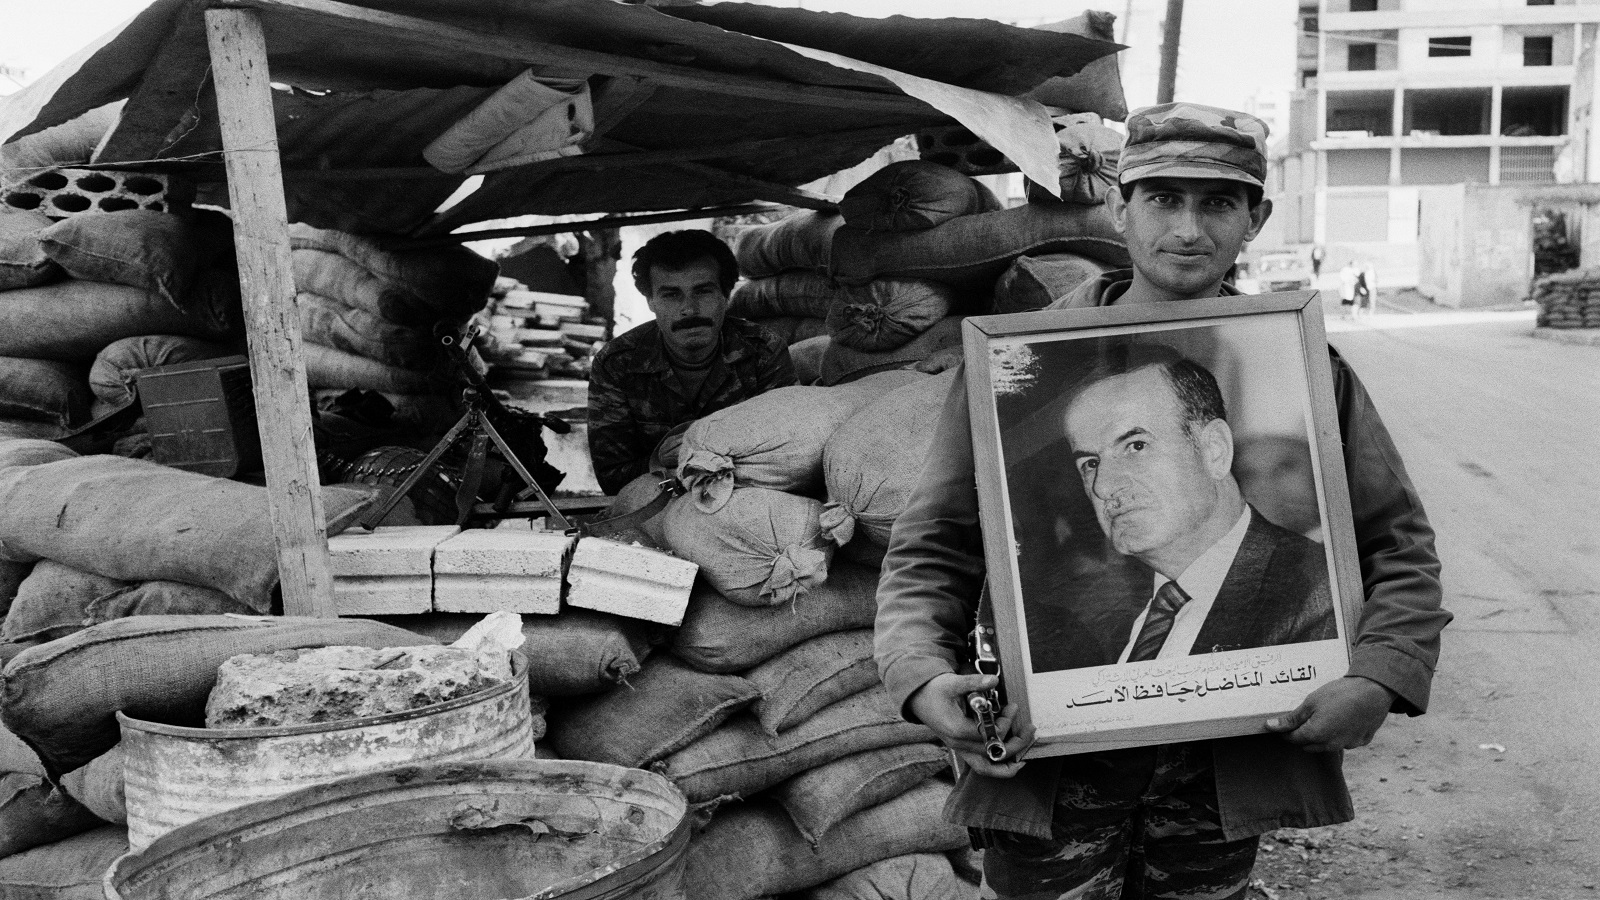 ذكريات من زمن الأسد..طفولة على وقع الخوف والبؤس والطائفية(1)